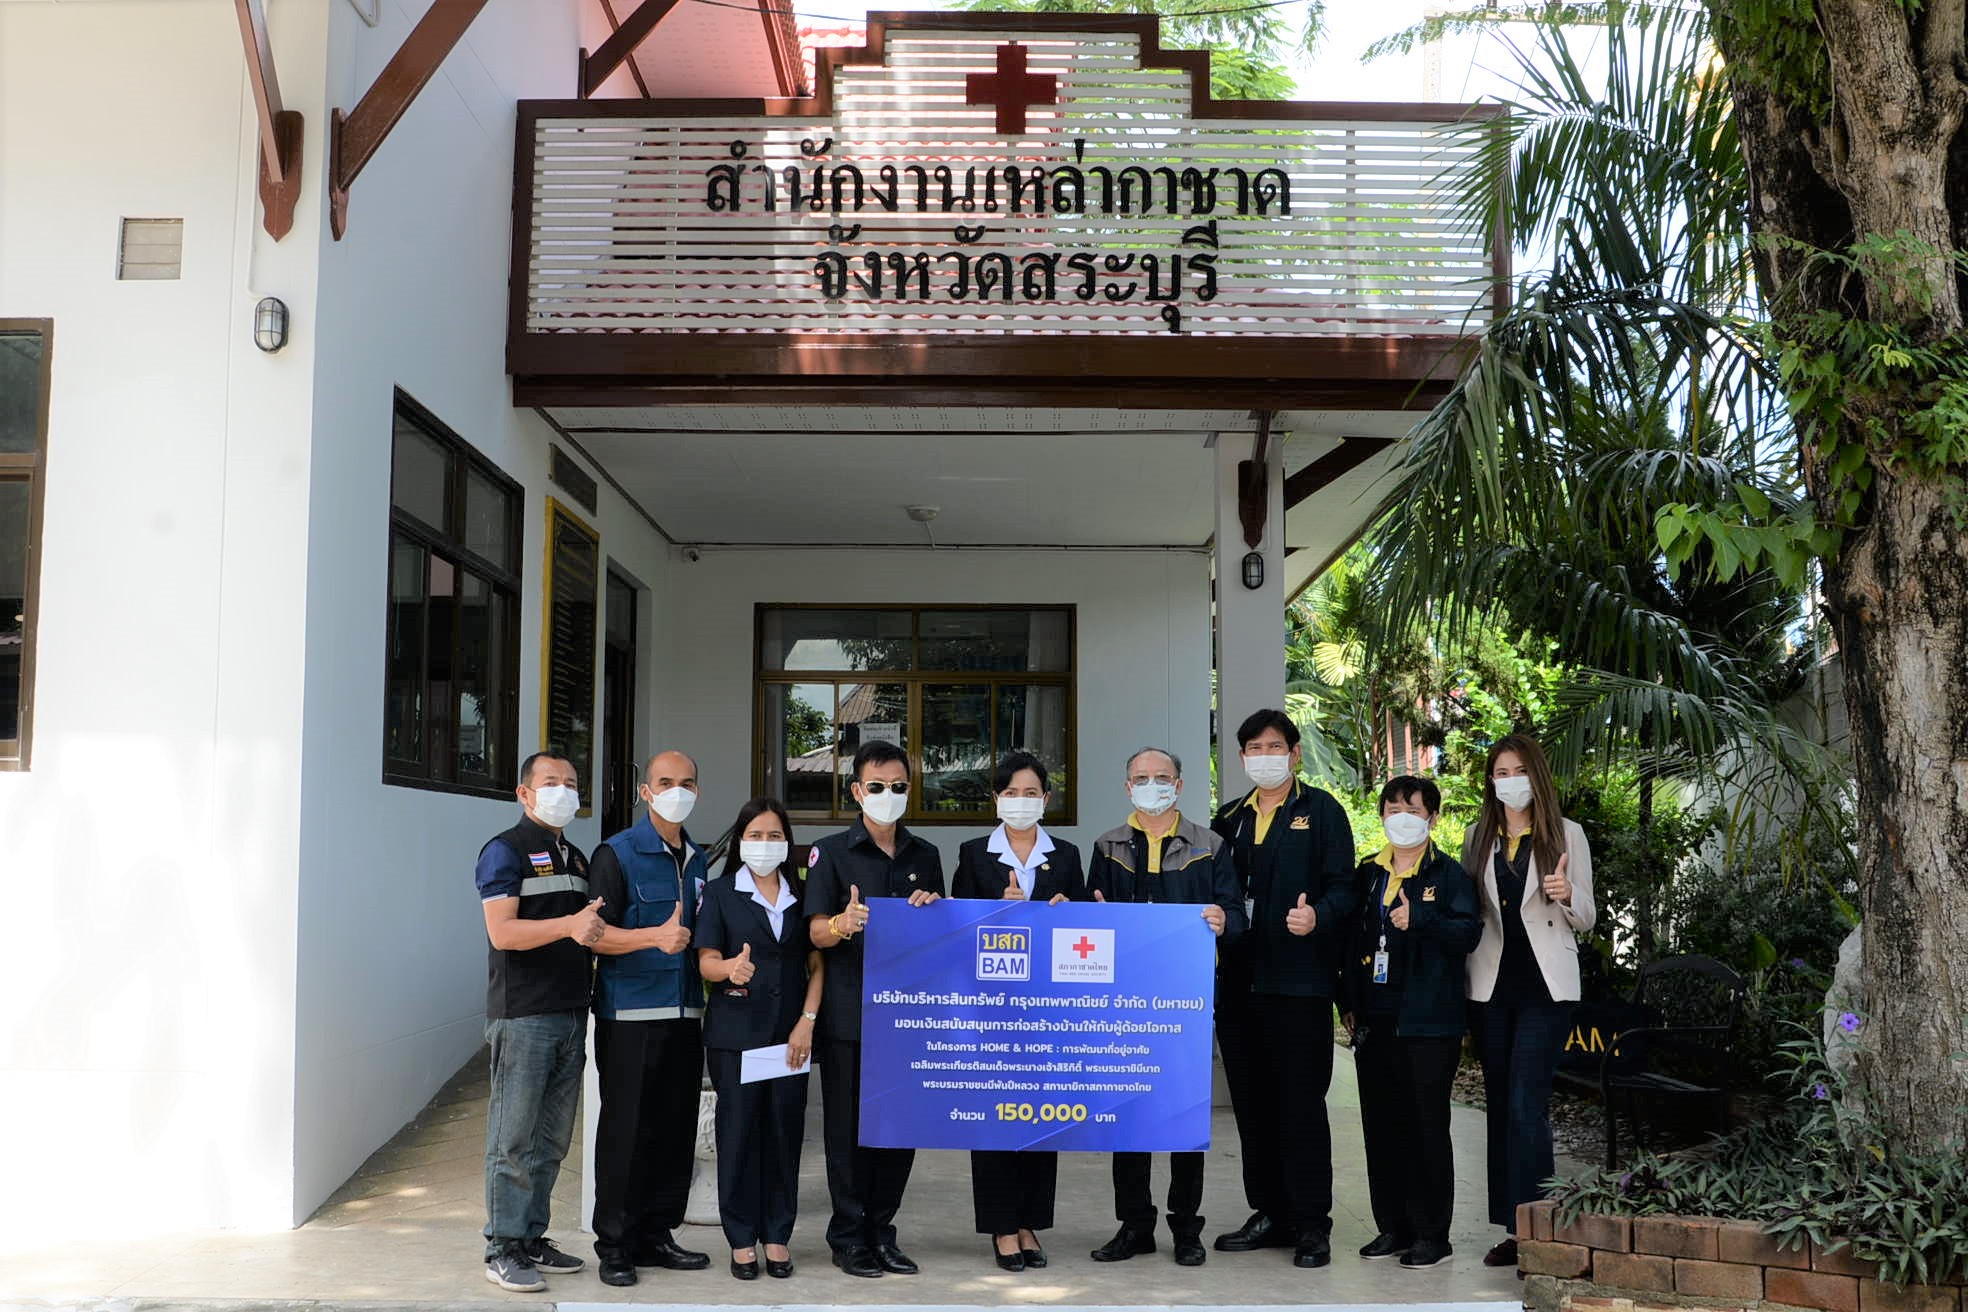 BAM ร่วมกับสภากาชาดไทย จัดโครงการ HOME & HOPE ต่อเนื่องเป็นปีที่ 2 สร้างบ้านให้กับผู้ด้อยโอกาส จังหวัดสระบุรี